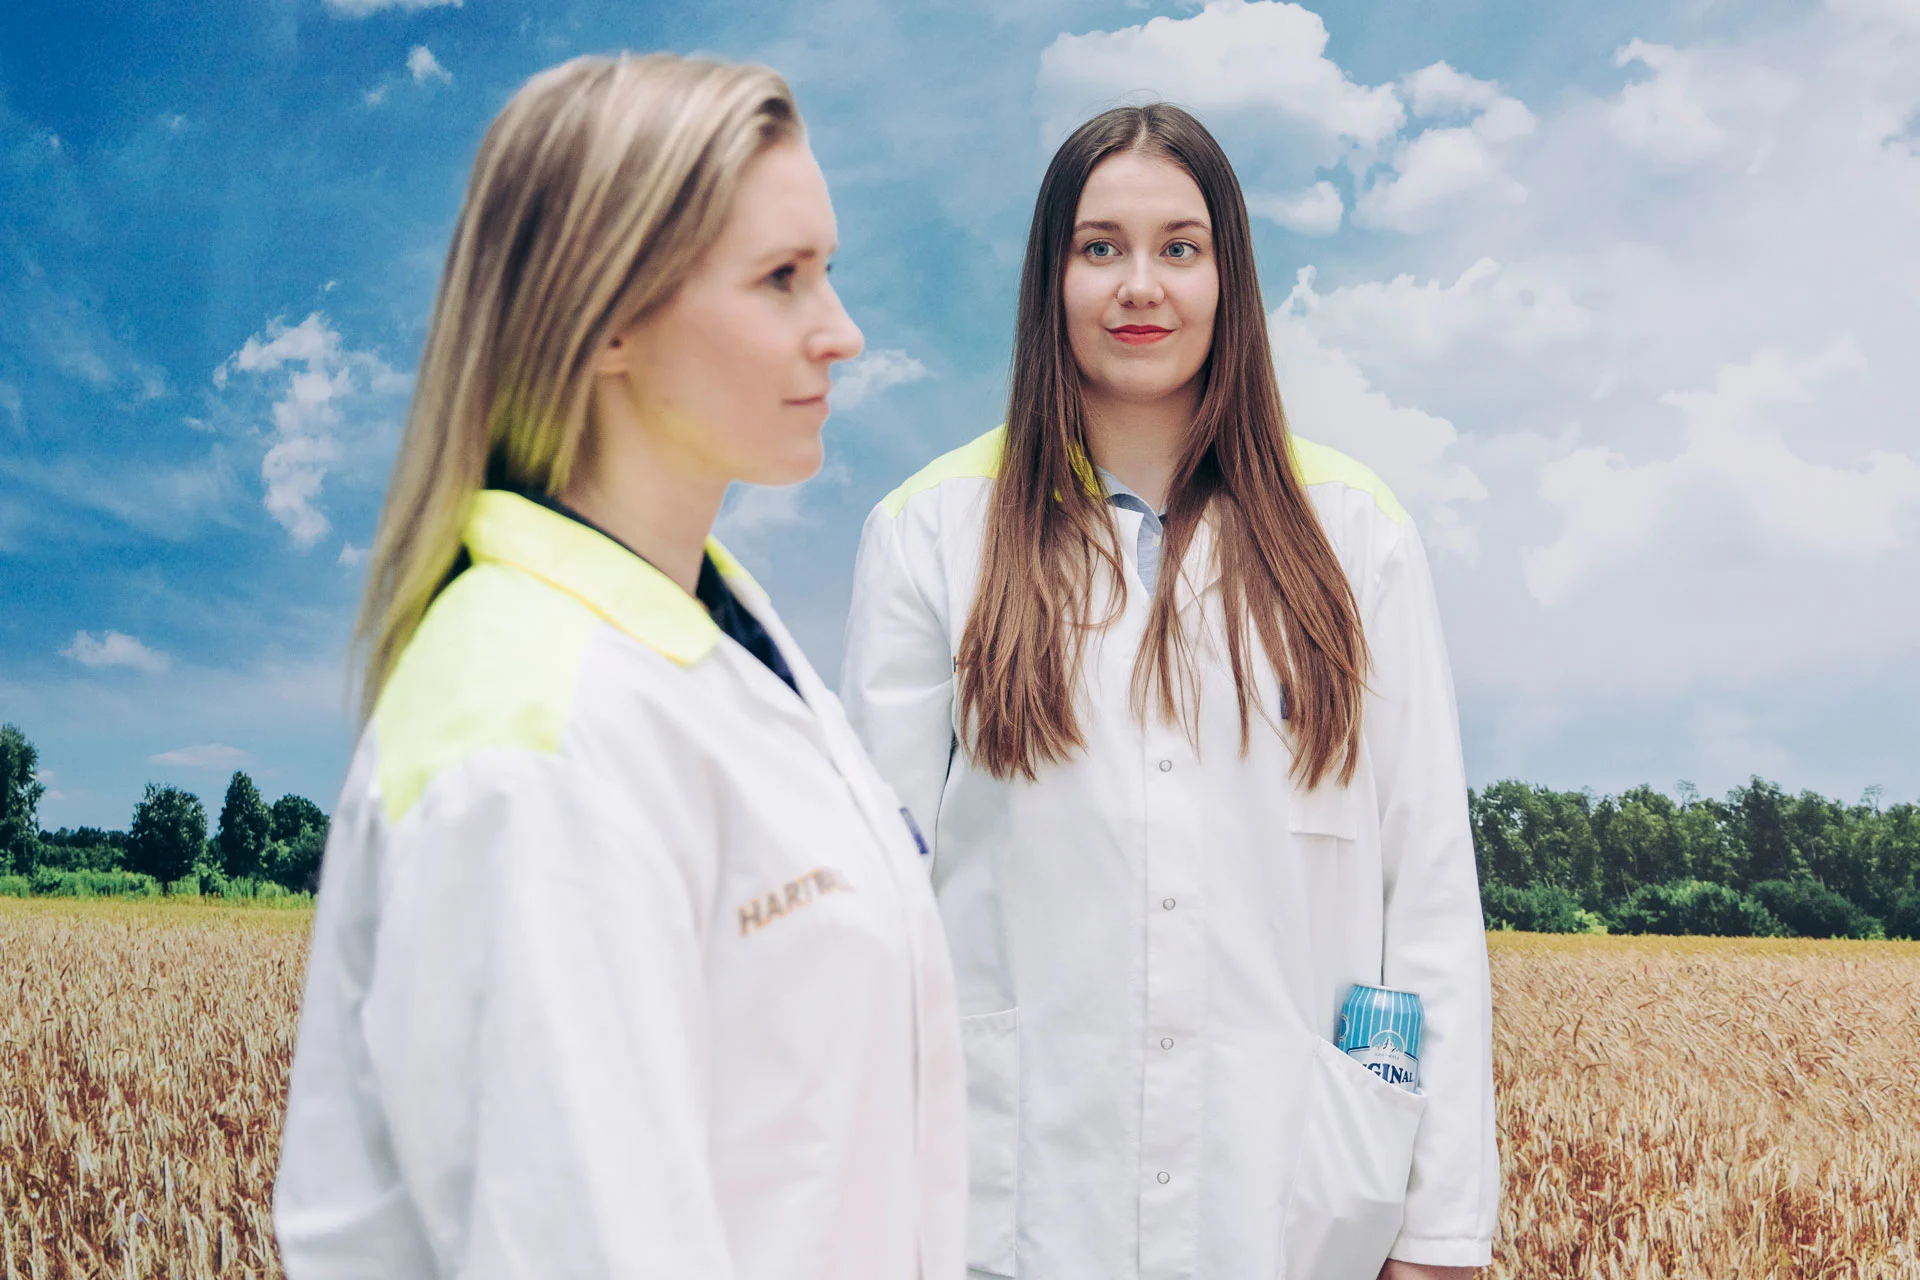 Kaksi naista seisoo peltokuvan edessä laboratoriotakeissa, toisen taskussa näkyy Long Drink -juomatölkki.